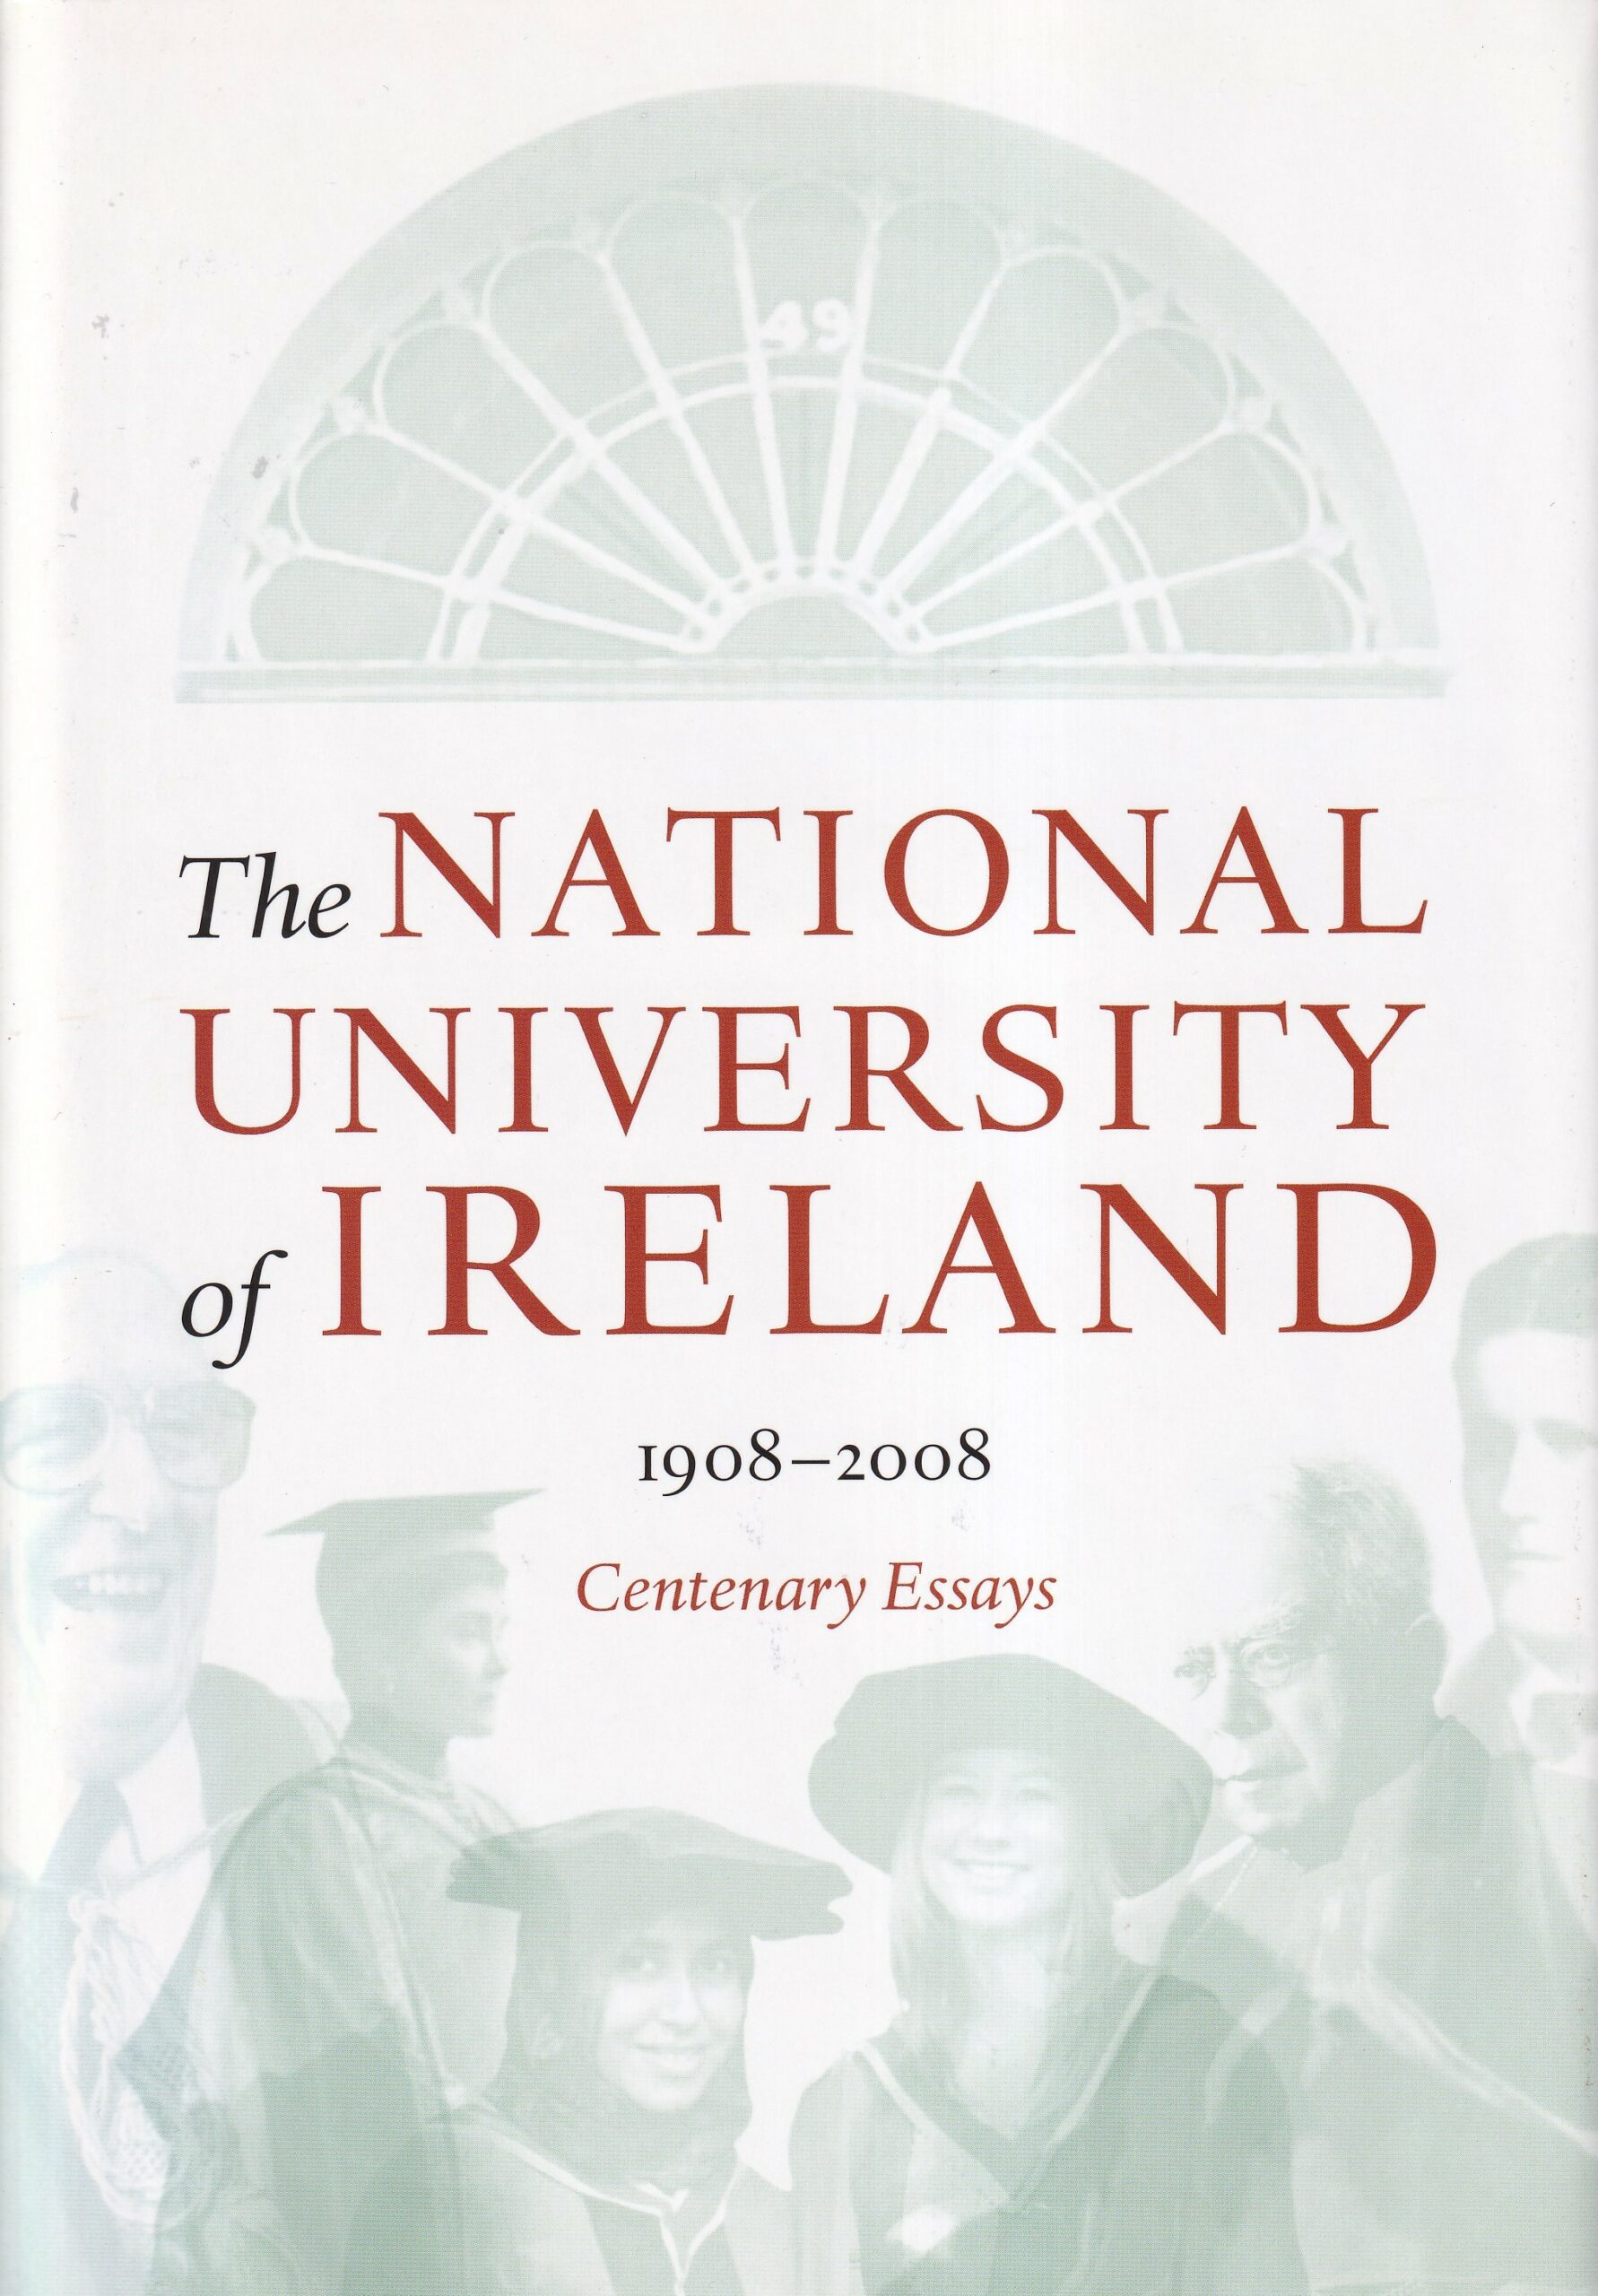 The National University of Ireland 1908-2008: Centenary Essays | Tom Dunne (ed.) | Charlie Byrne's